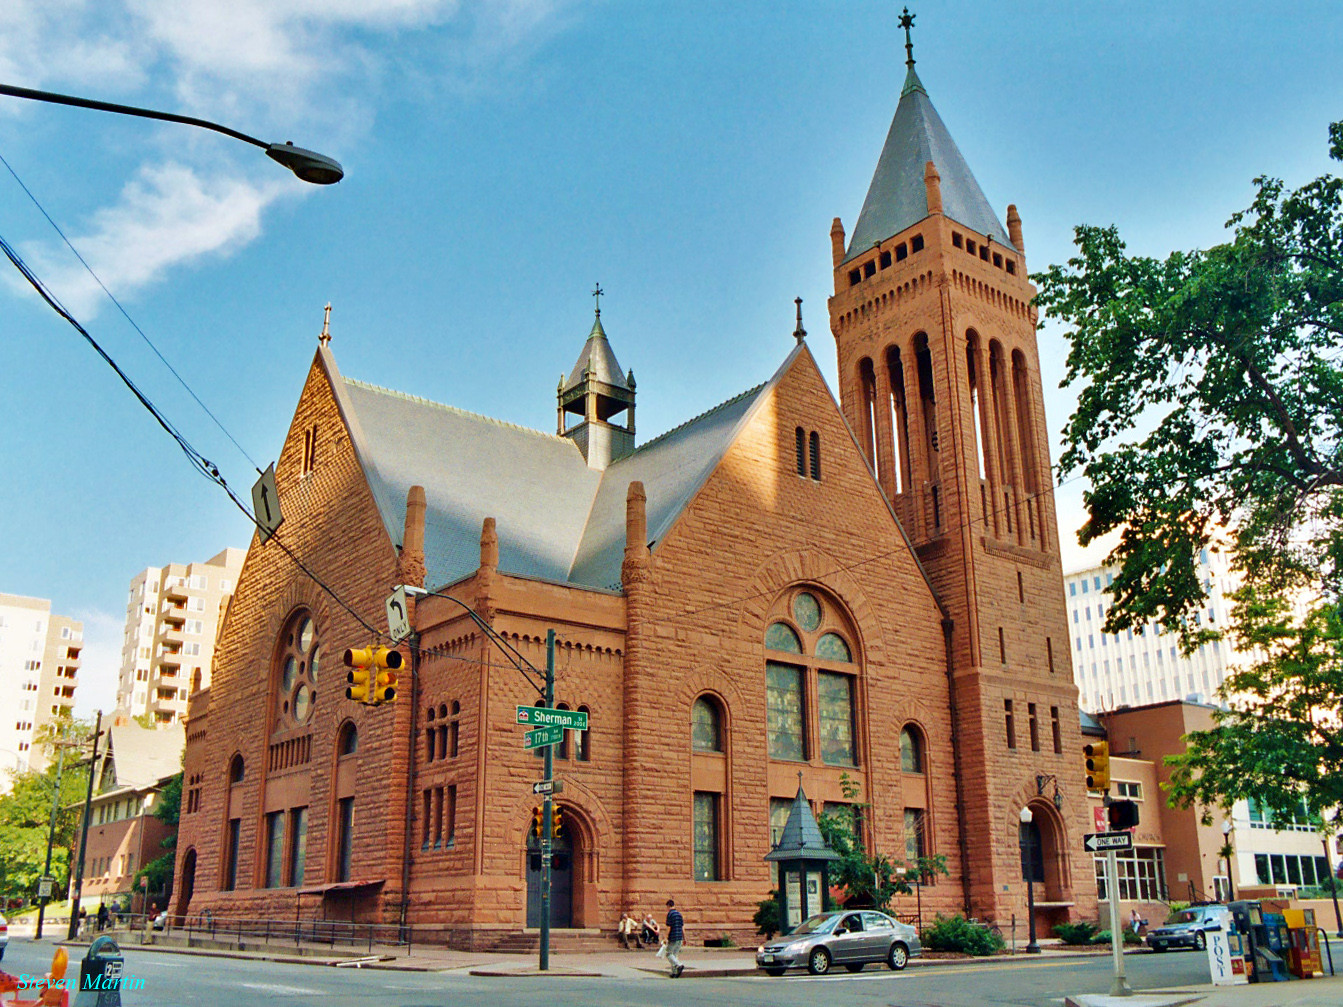 Photograph of the Central Presbyterian Church in Denver, Colorado.